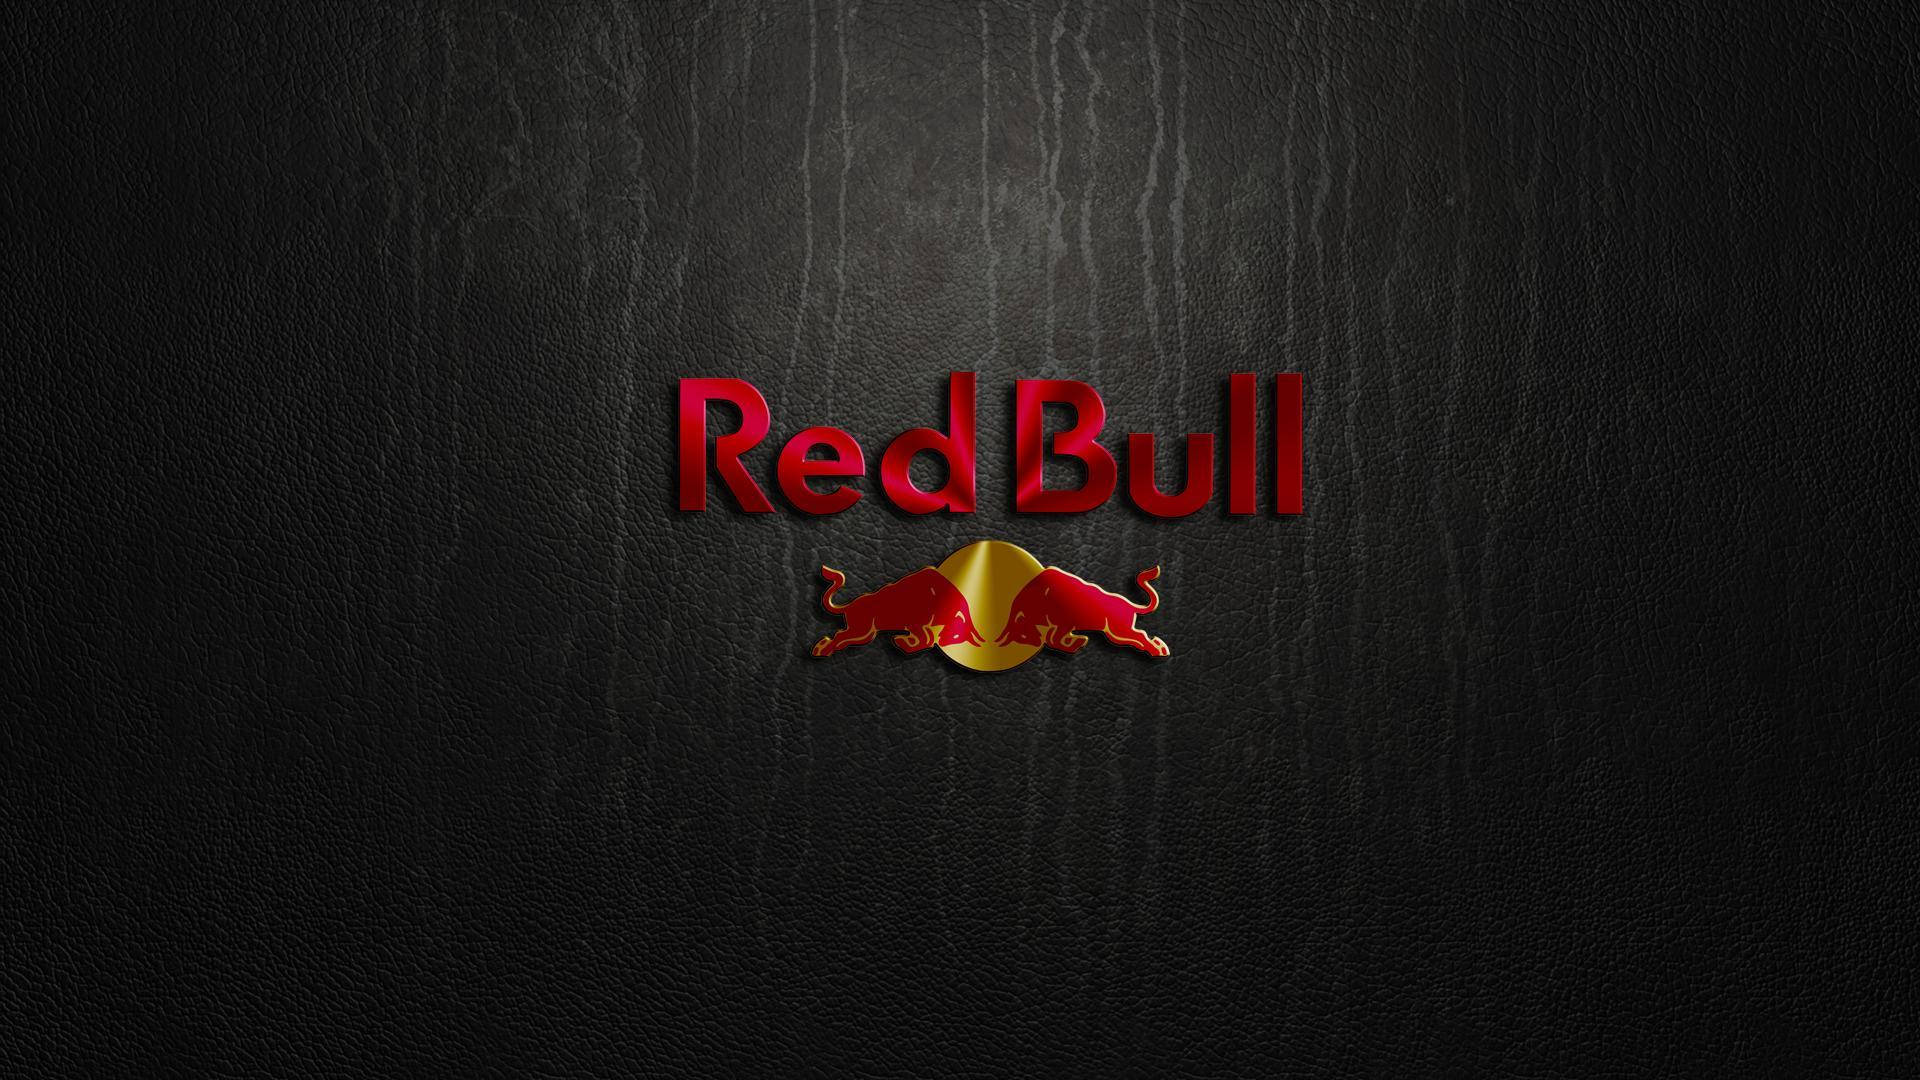 Seje Logoer Red Bull Wallpaper